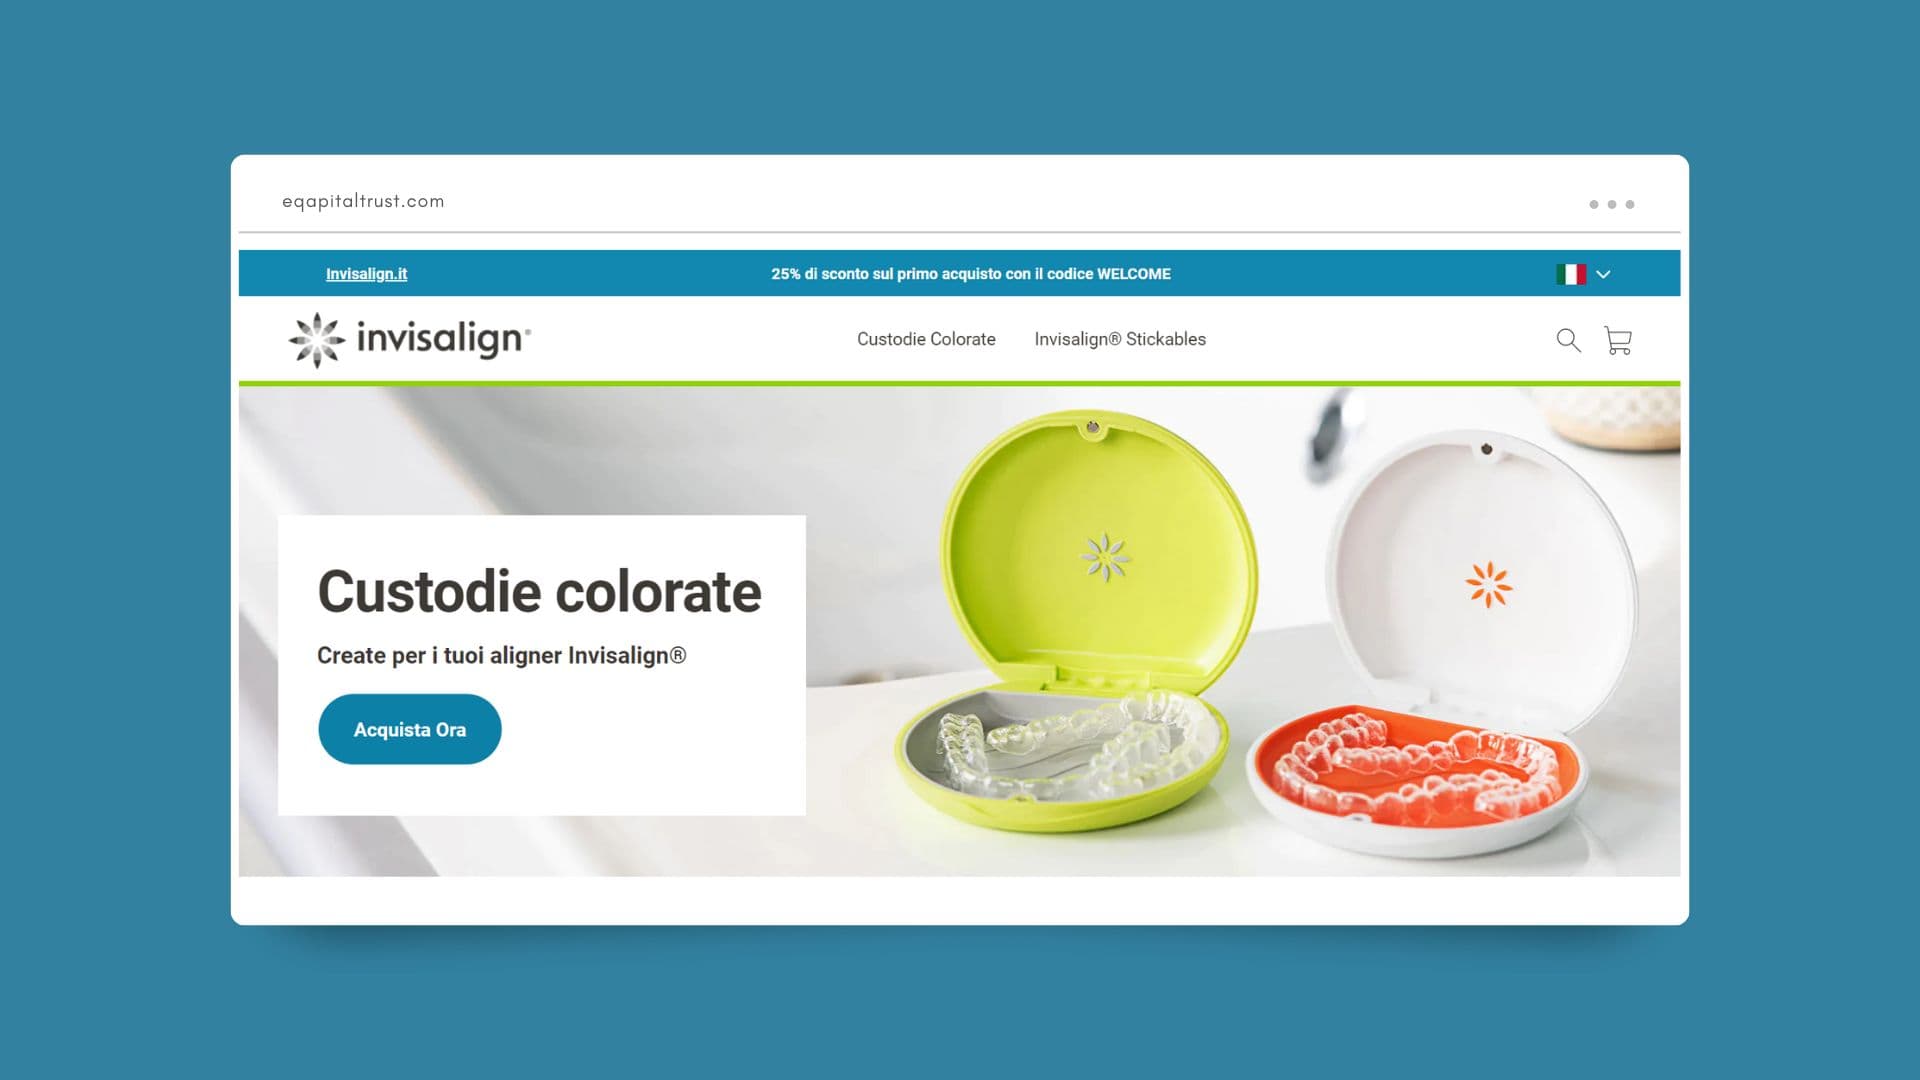 Align tech - Invisalign - Gestione siti web - European Business - 226lab marketing agency - Svizzera -Lugano - Italia